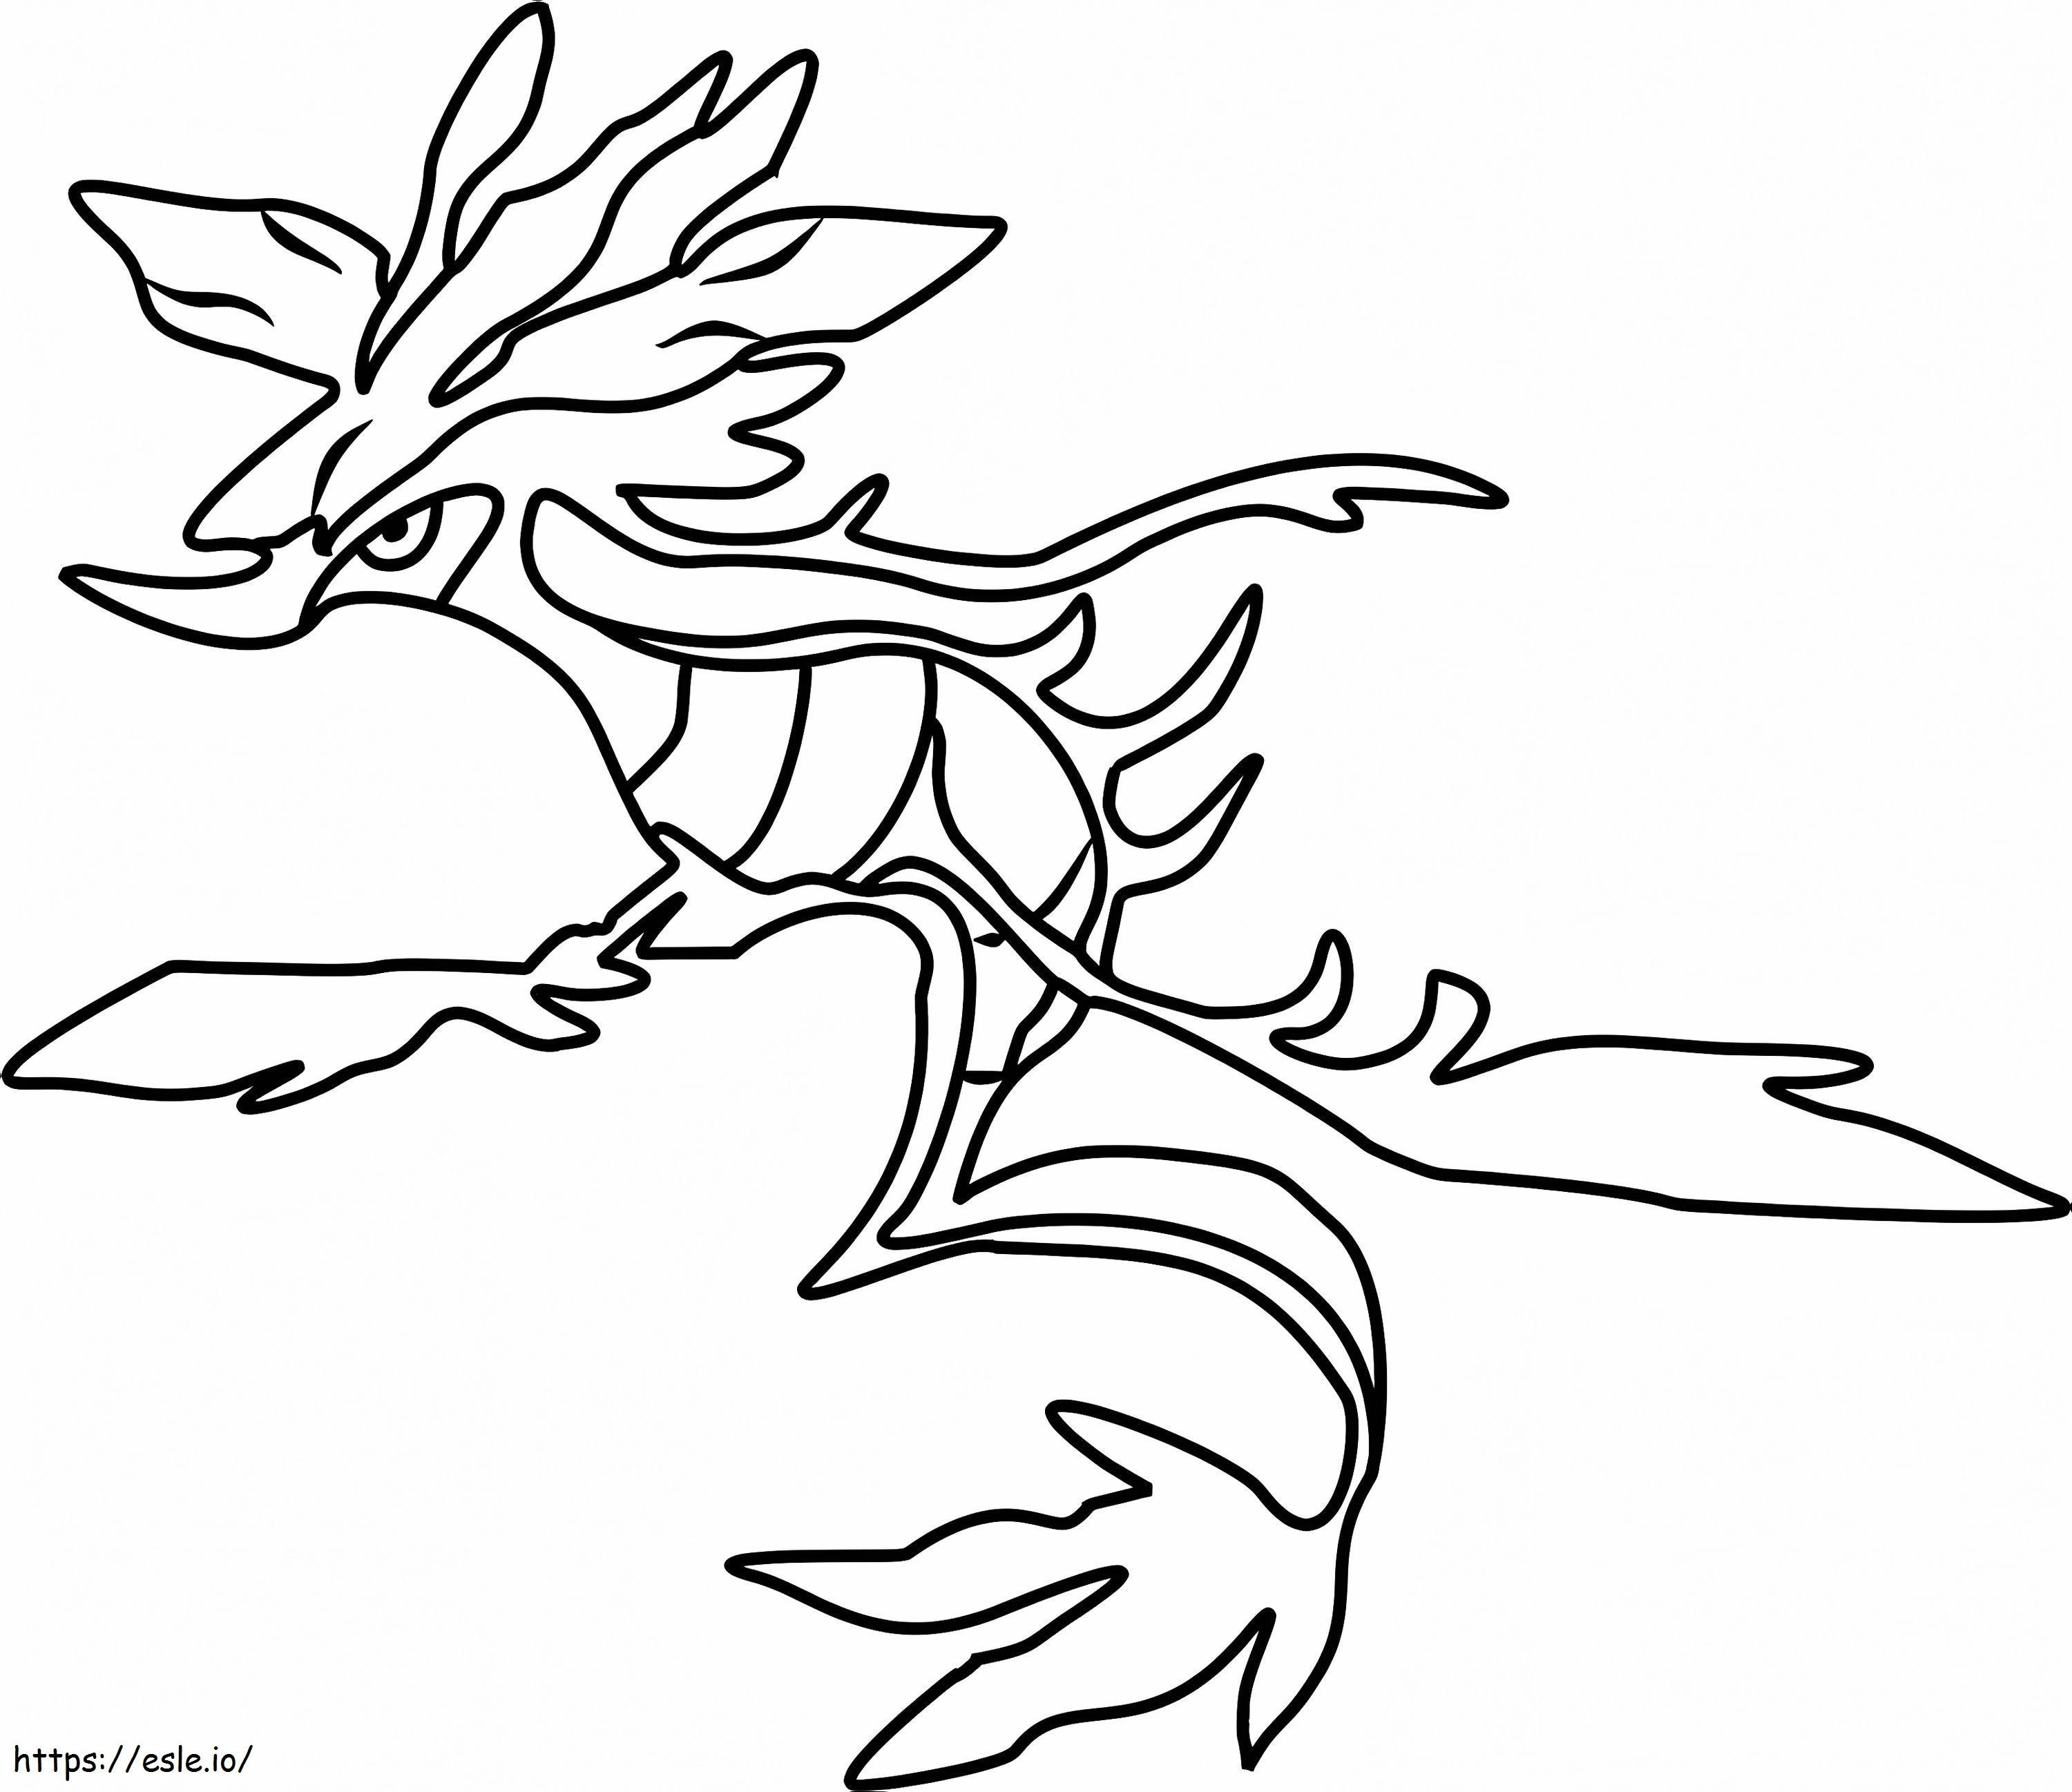 Dragon Algae Gen 6 Pokemon coloring page